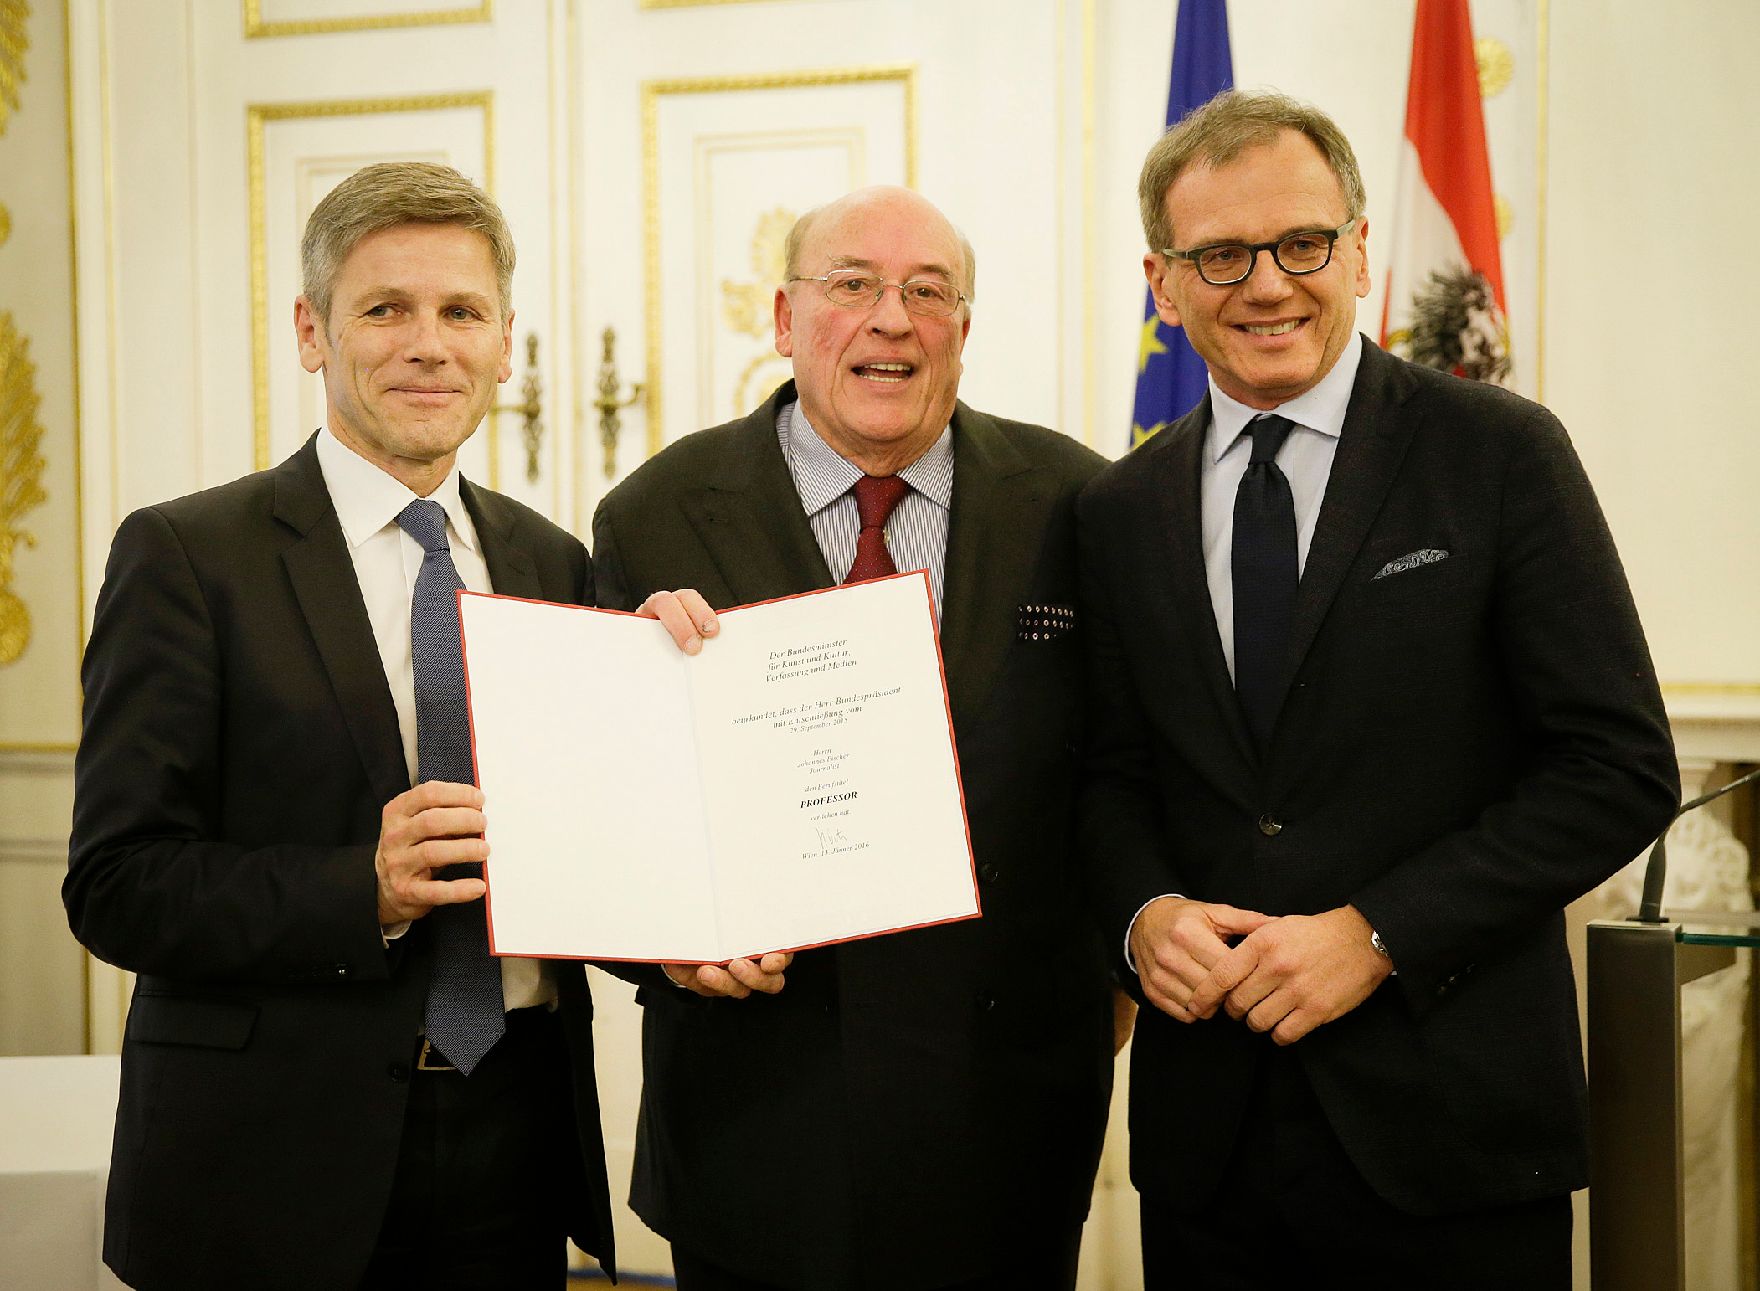 Am 13. Jänner 2016 überreichte Kunst- und Kulturminister Josef Ostermayer (l.) die Urkunde, mit der Johannes Fischer (m.) der Berufstitel Professor verliehen wurde. Im Bild mit Armin Wolf (r.).